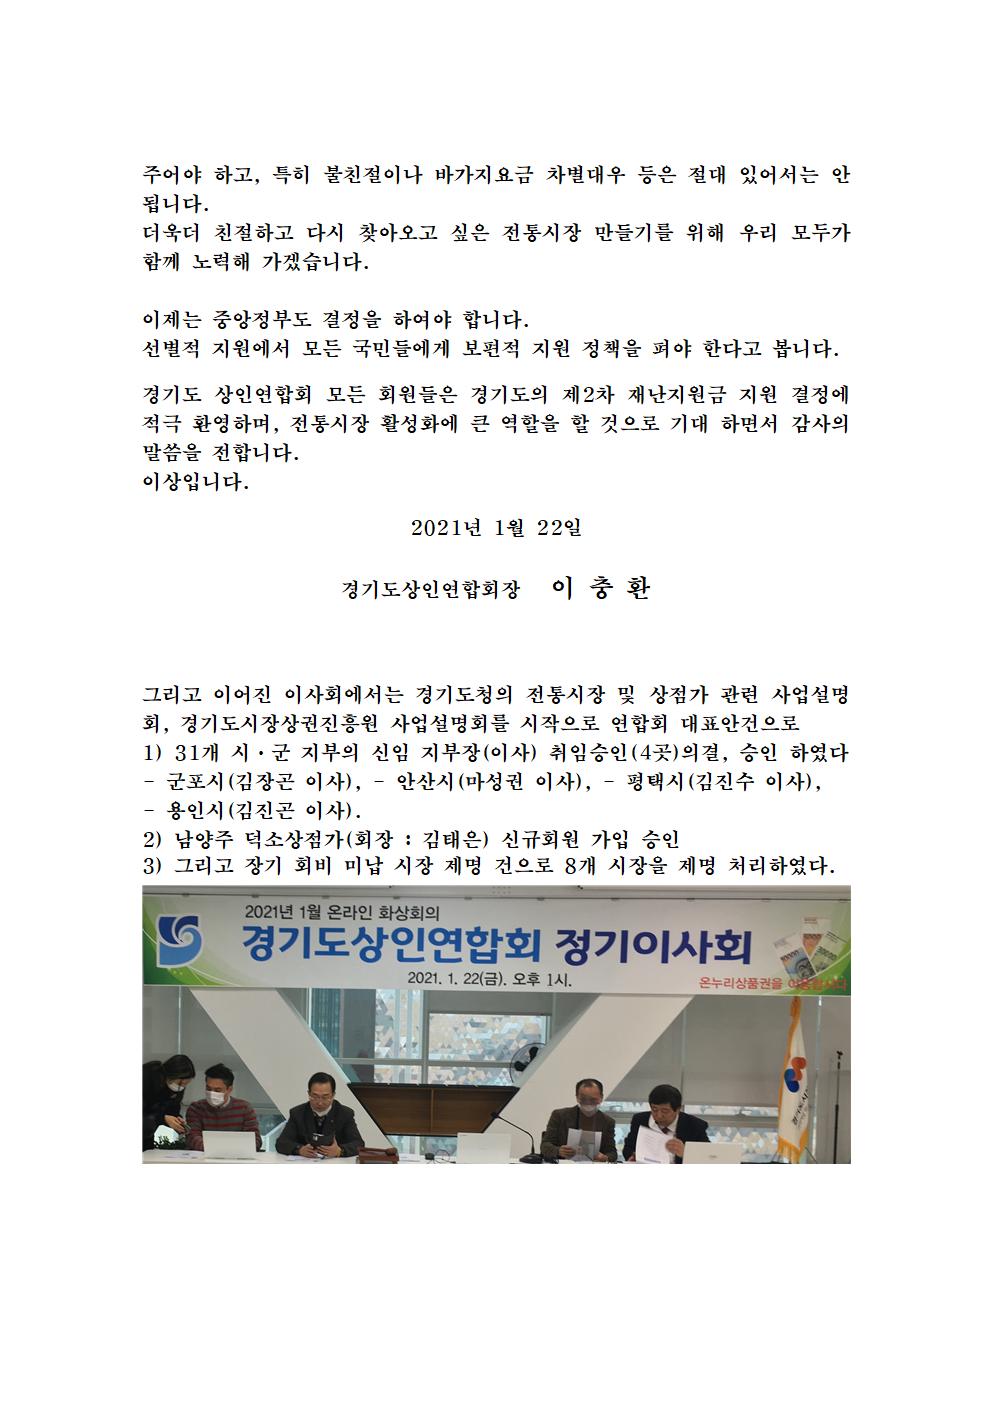 경기지회 온라인 이사회 개최